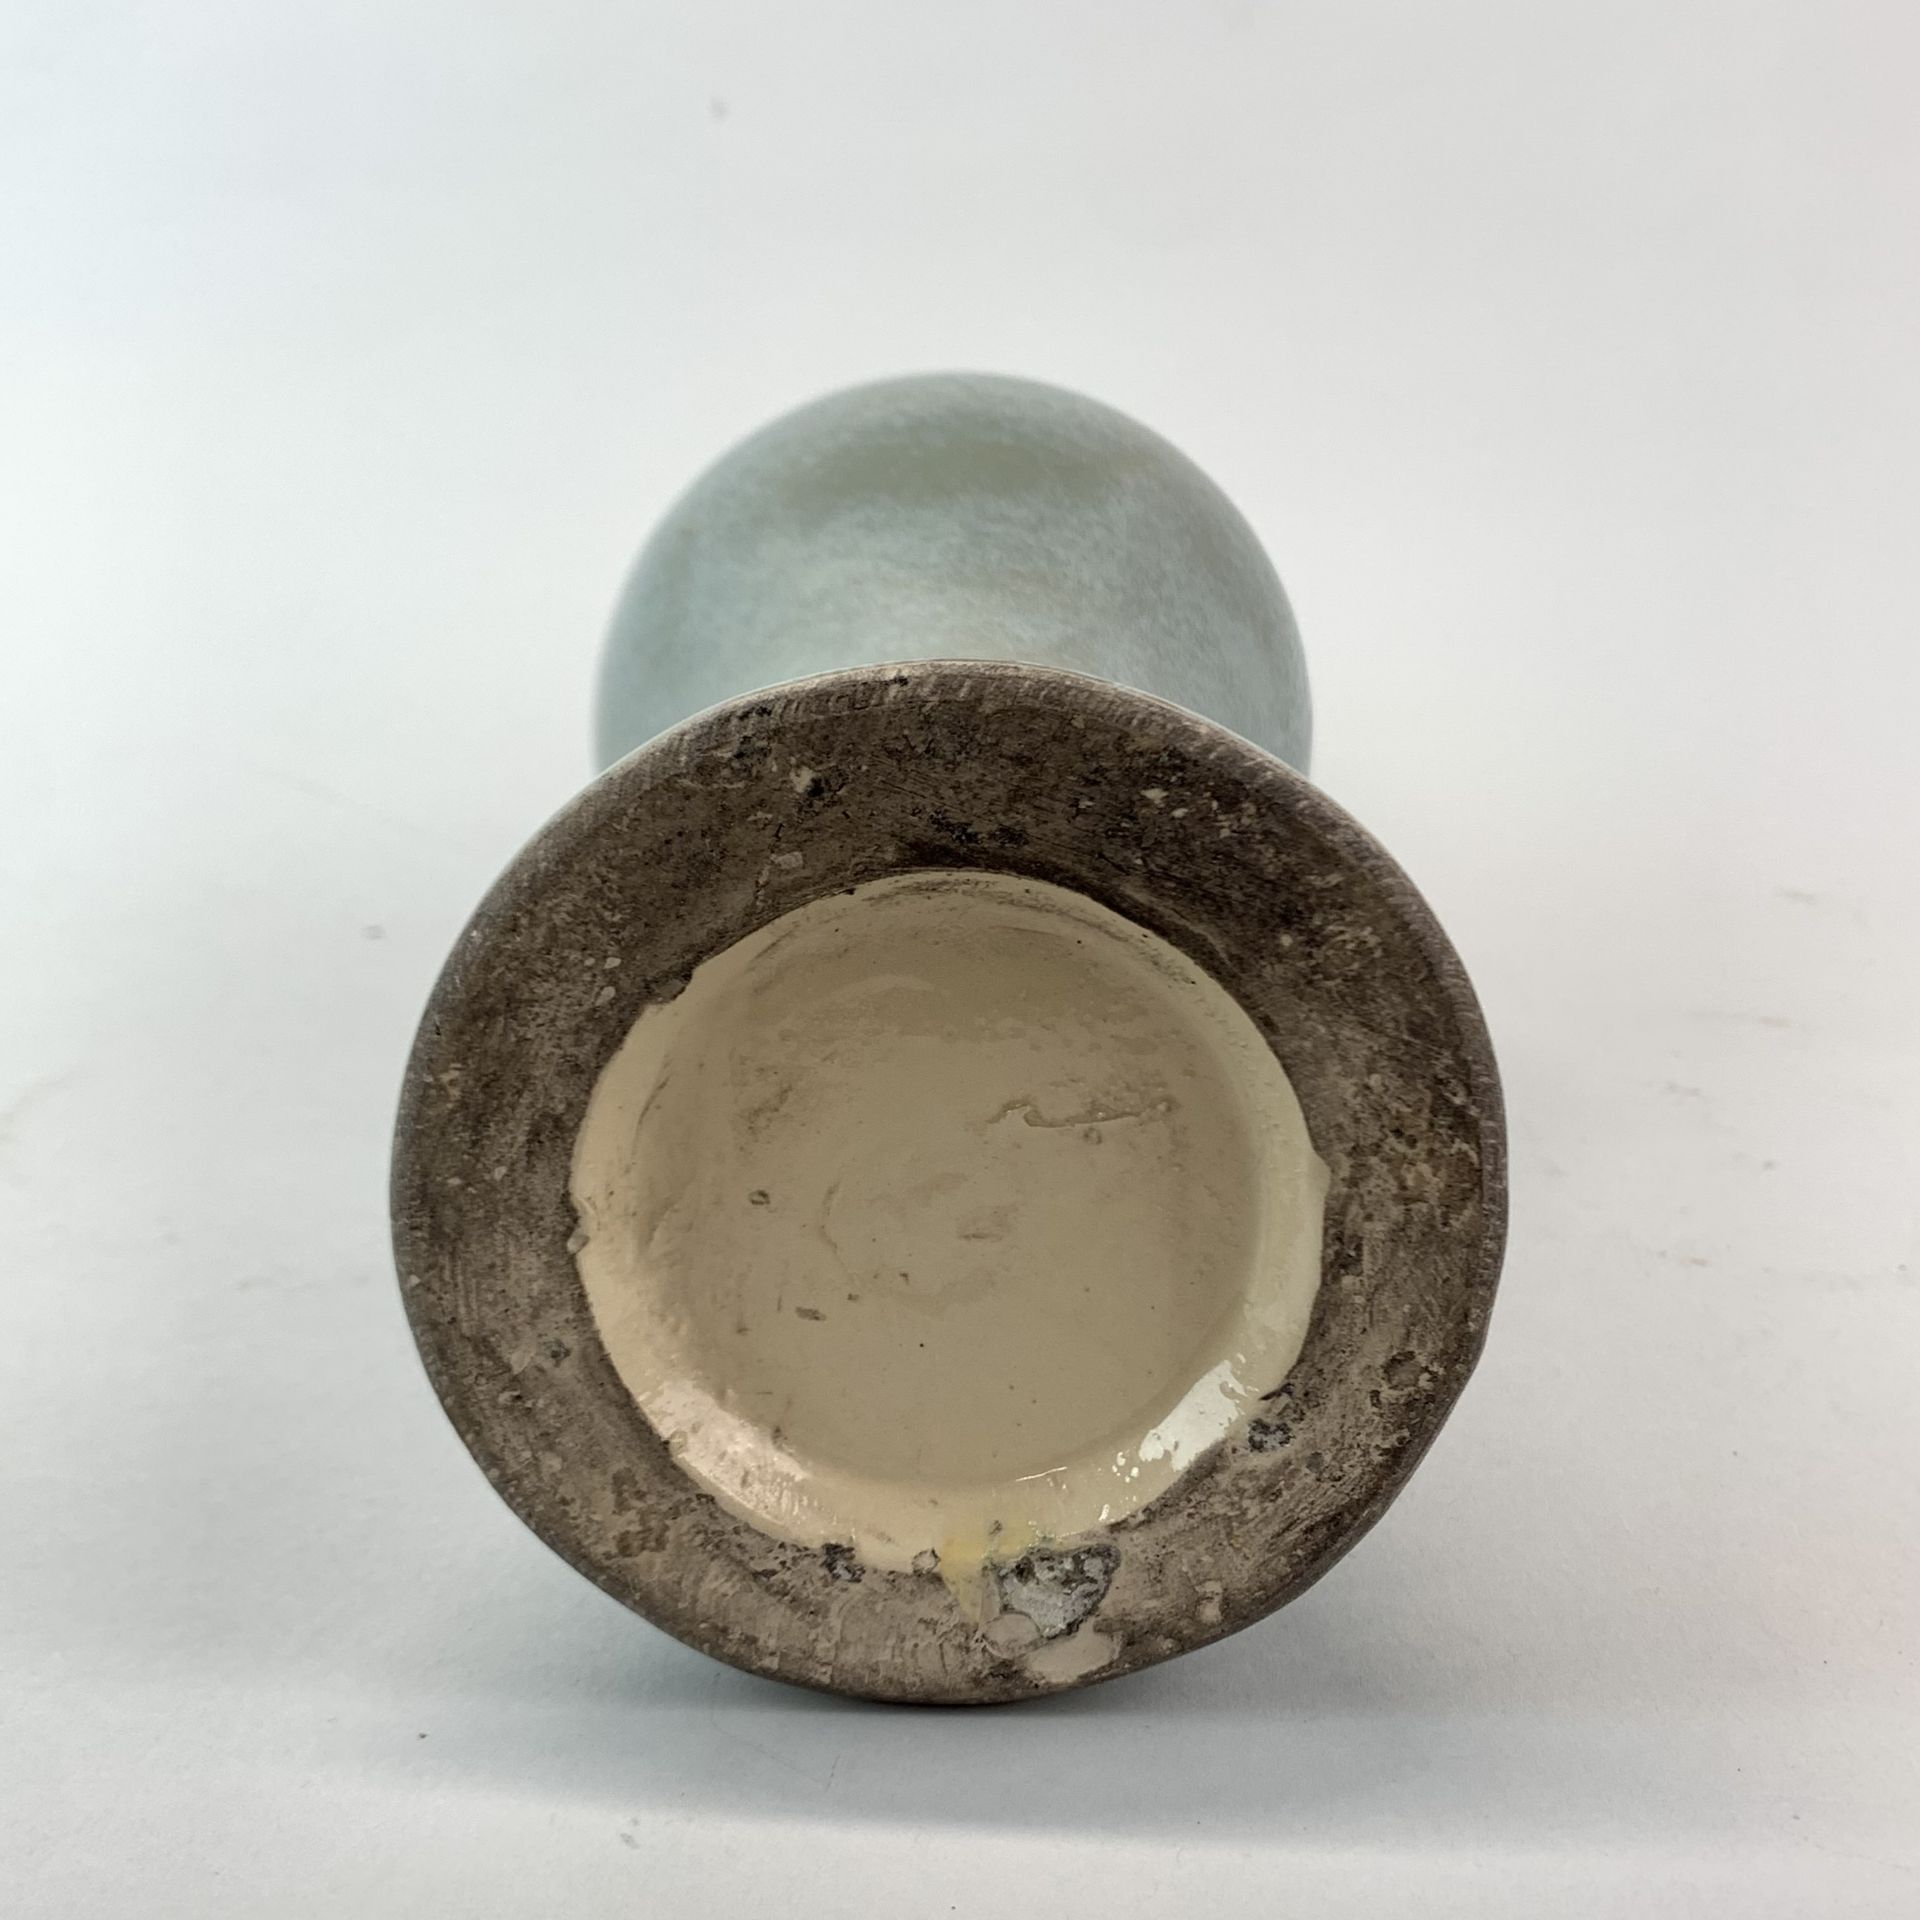 A celadon glazed heavily potted soft paste porcelain vase, probably Korean. H. 32cm. - Image 2 of 2